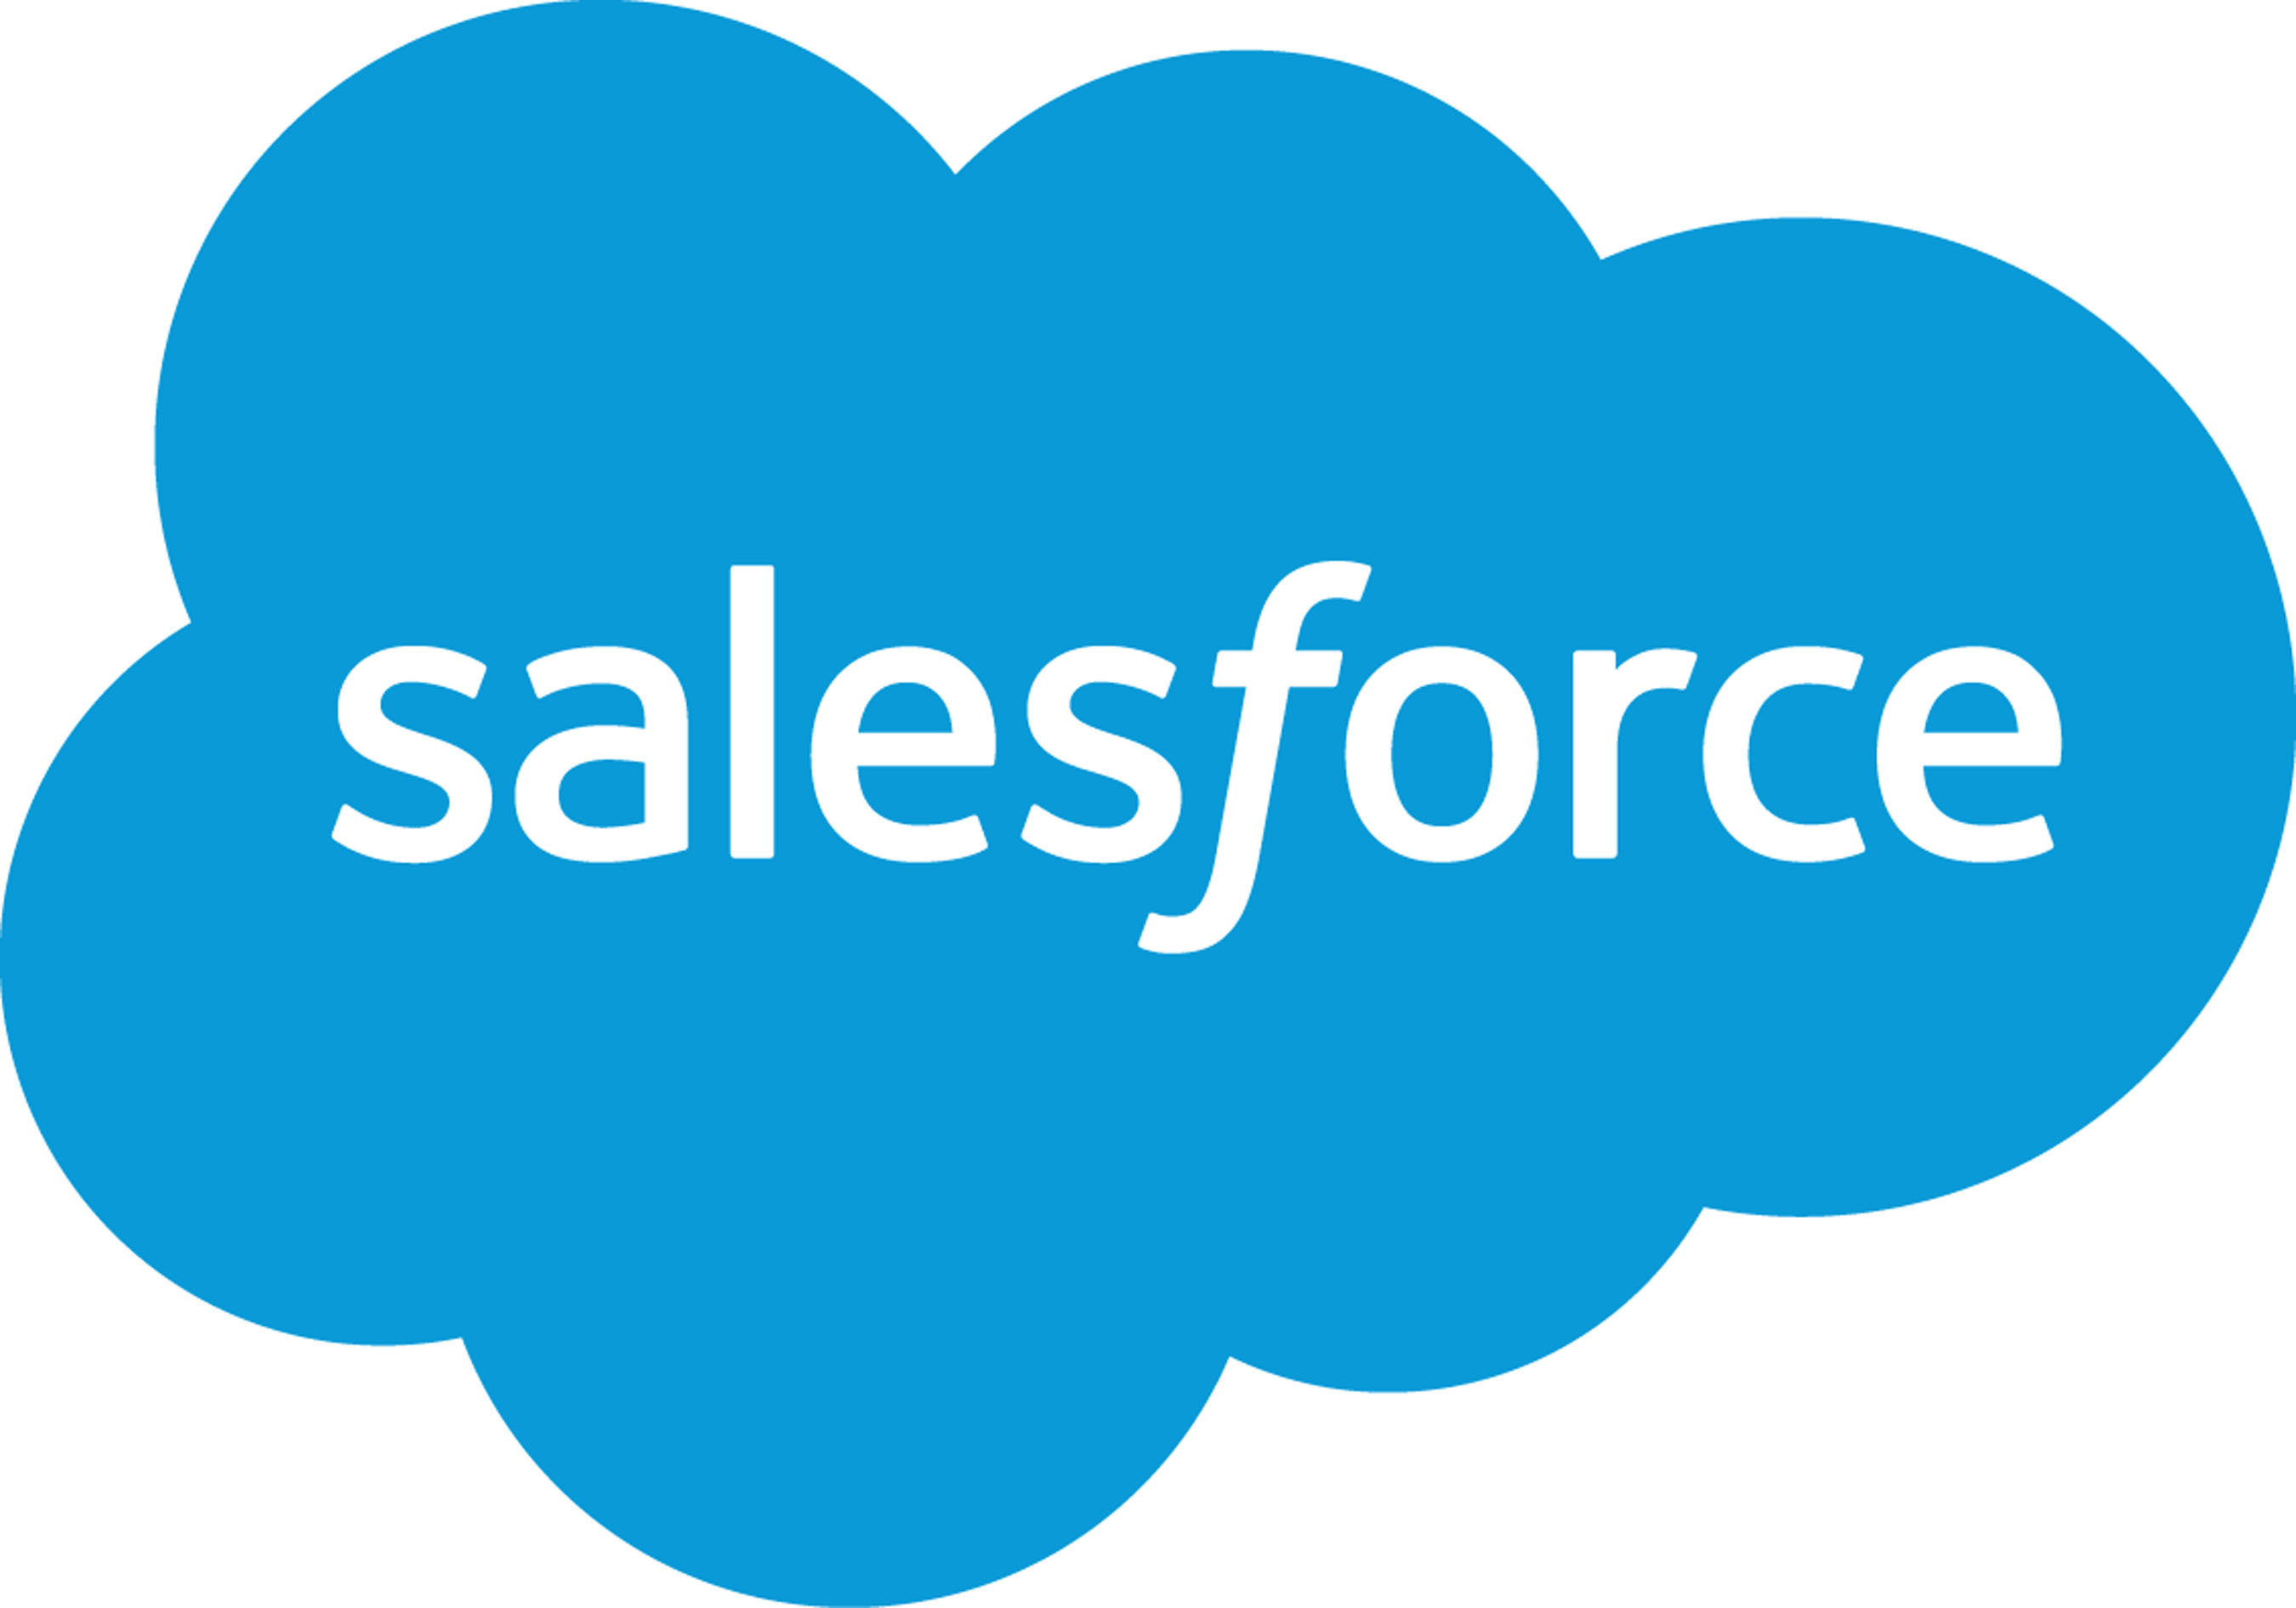 www.salesforce.com.